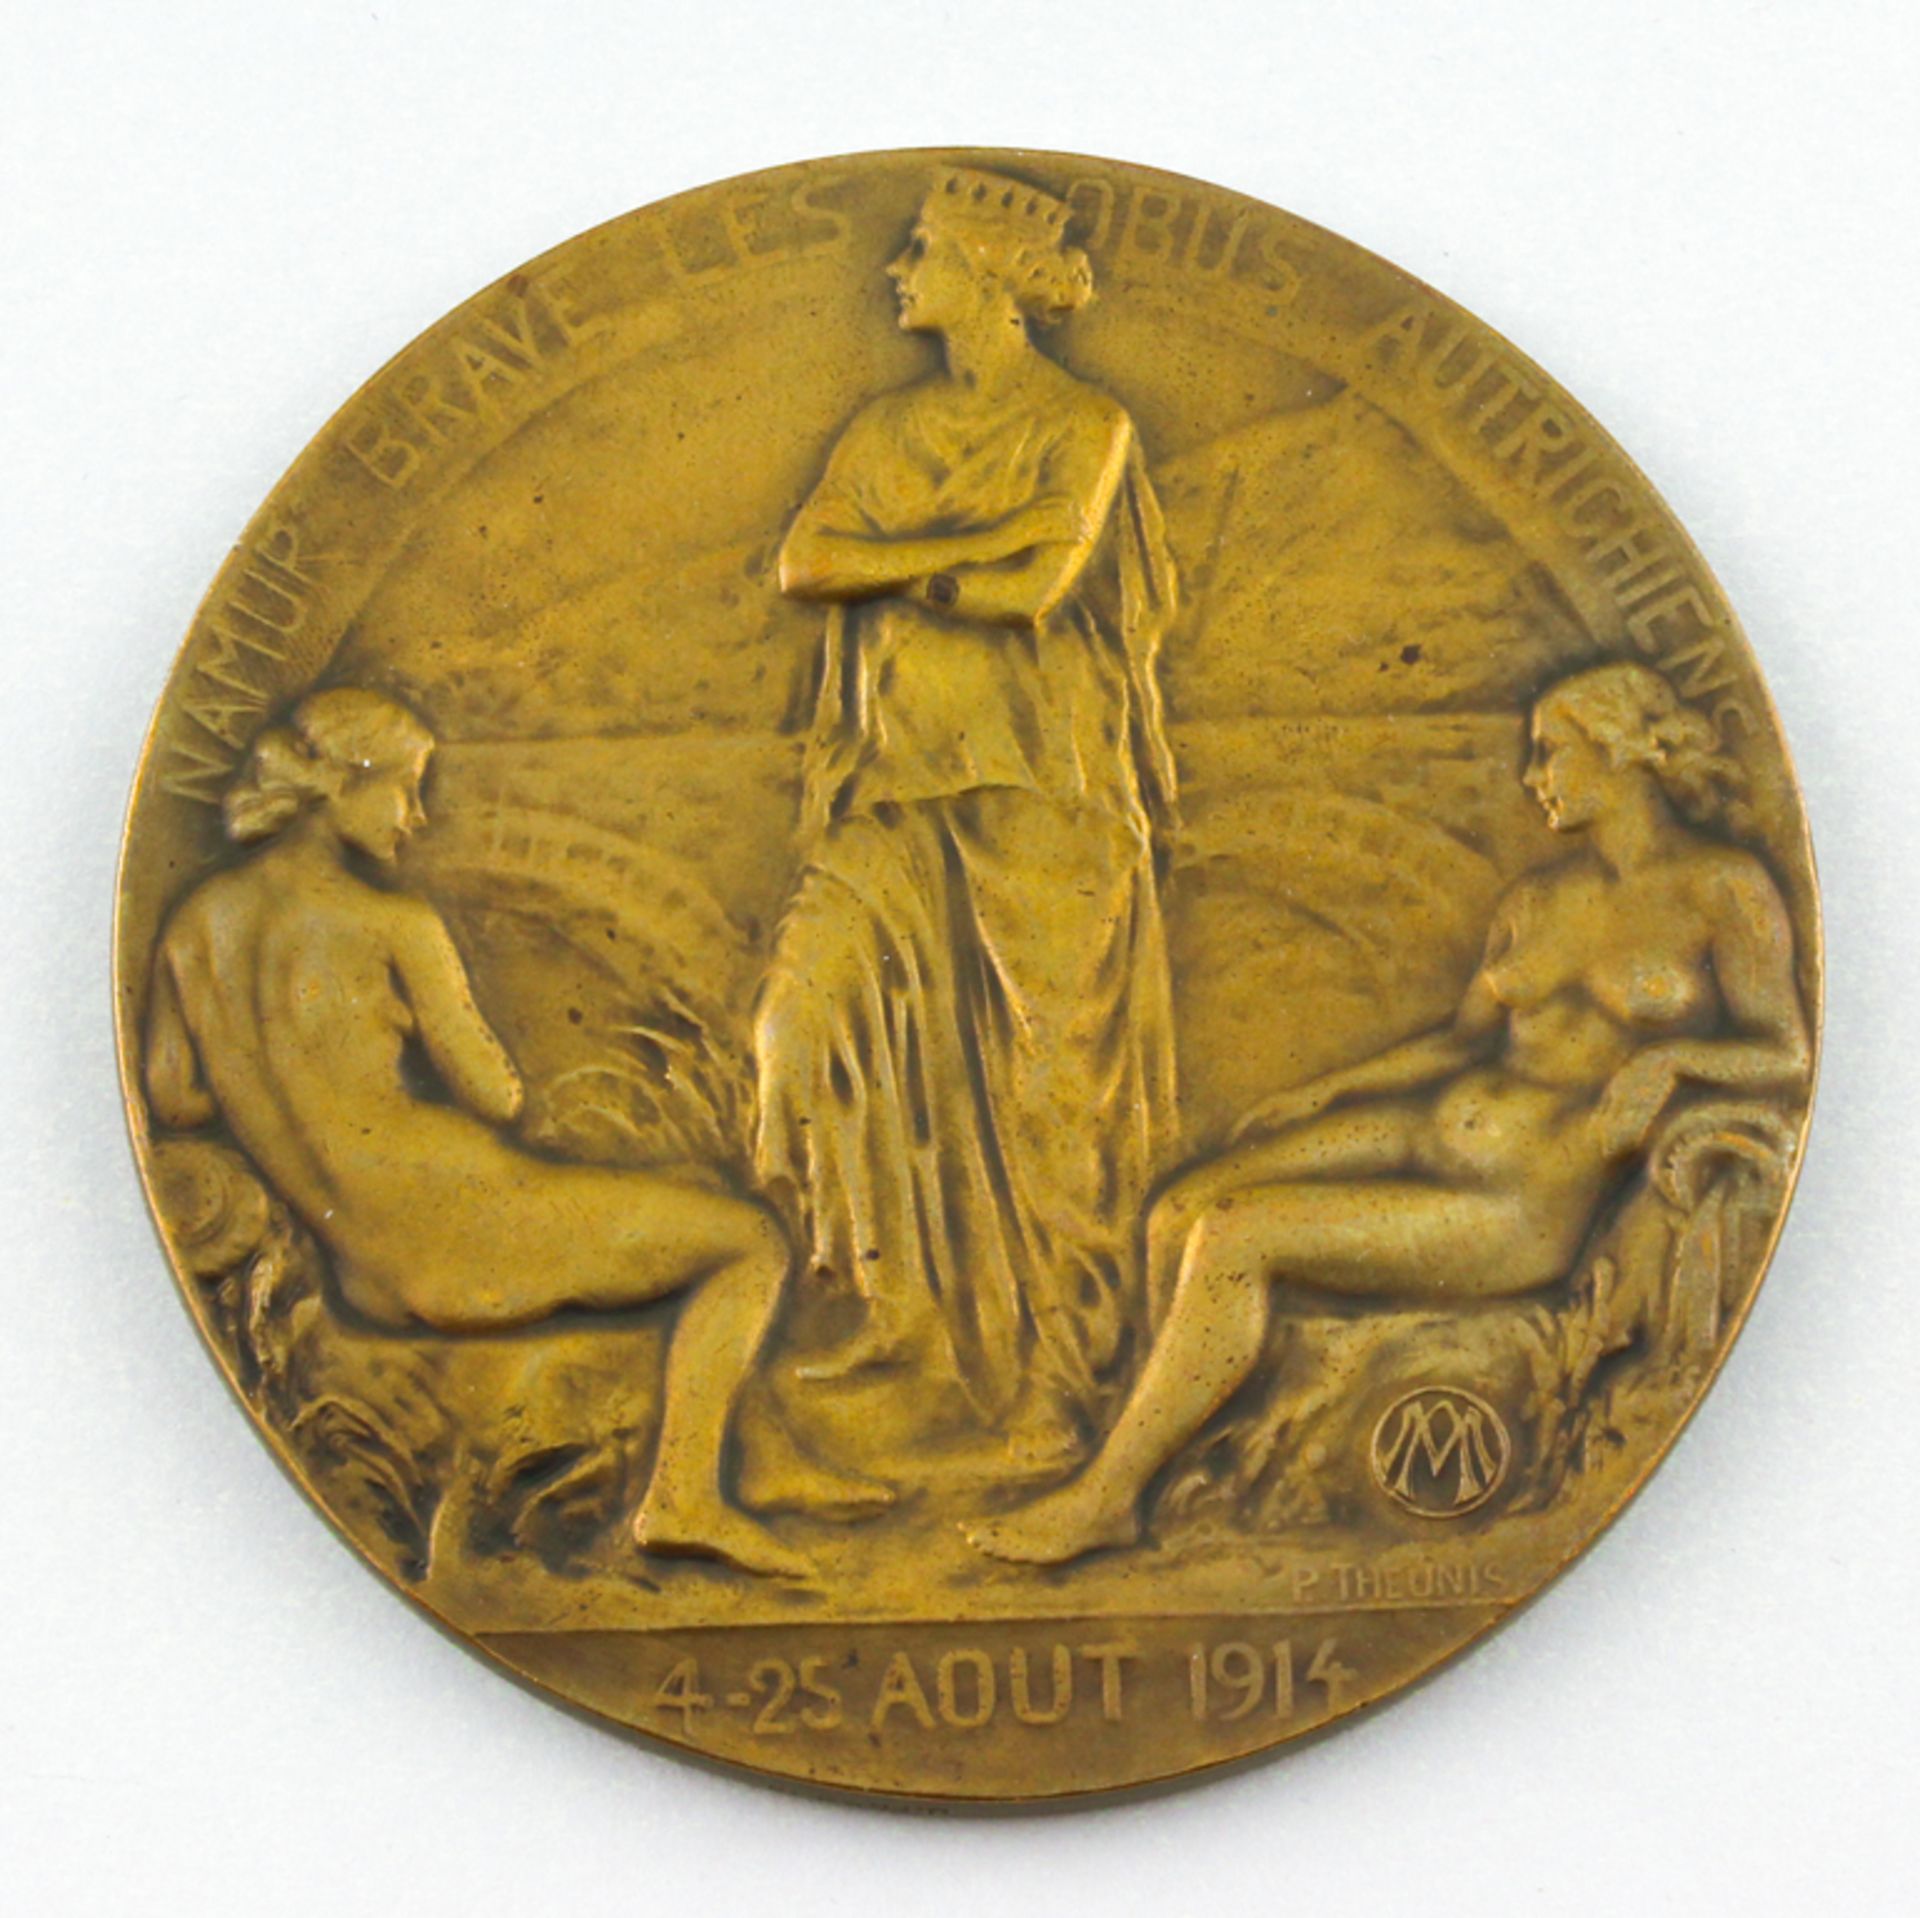 Theunis, Pierre (1883 Antwerpen - Schaarbeck 1950) Bronzemedaille "Namur 1914", beidseitig re. u. - Image 2 of 2